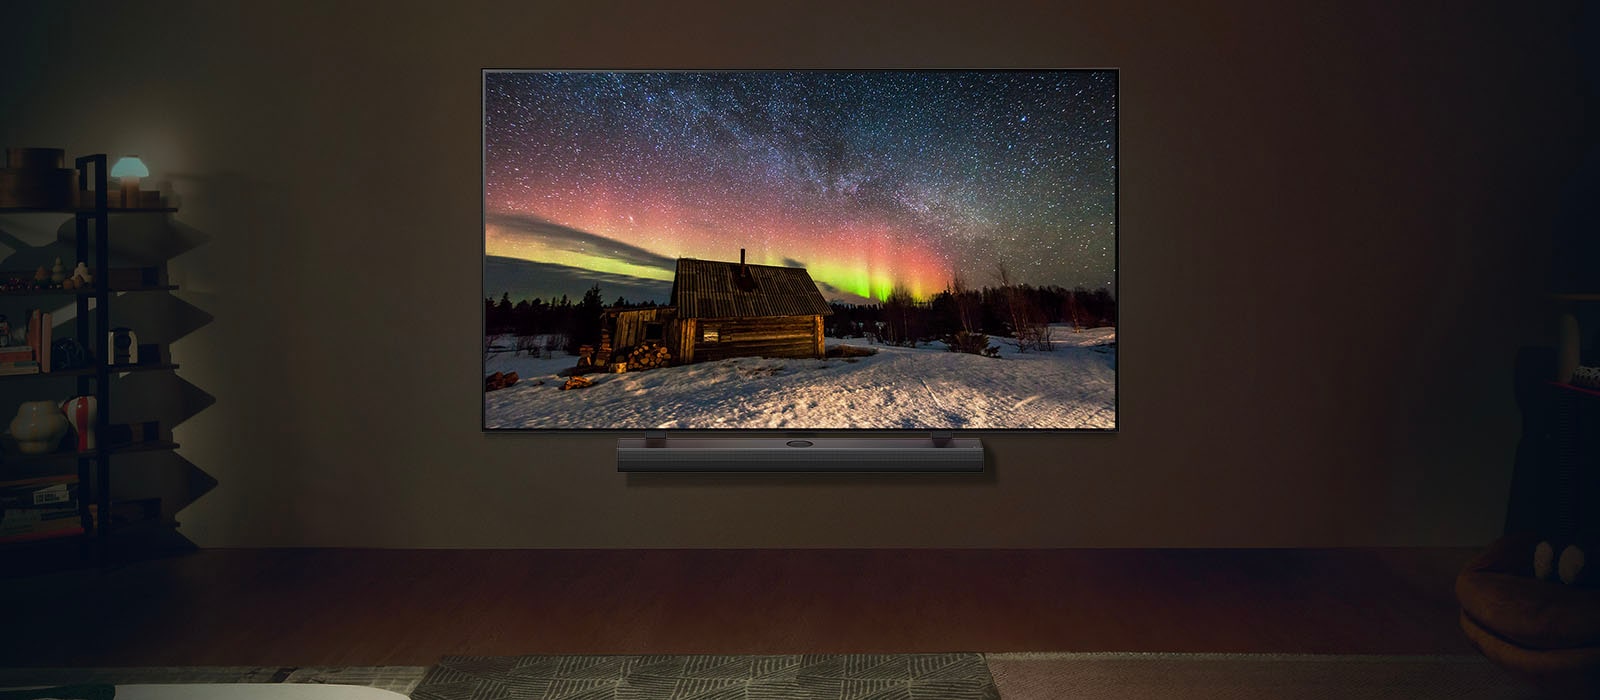 טלוויזיית LG וה-Soundbar של LG בחלל מגורים מודרני בשעות הלילה. תמונת הזוהר הצפוני שעל המסך מוצגת ברמת הבהירות האופטימלית.